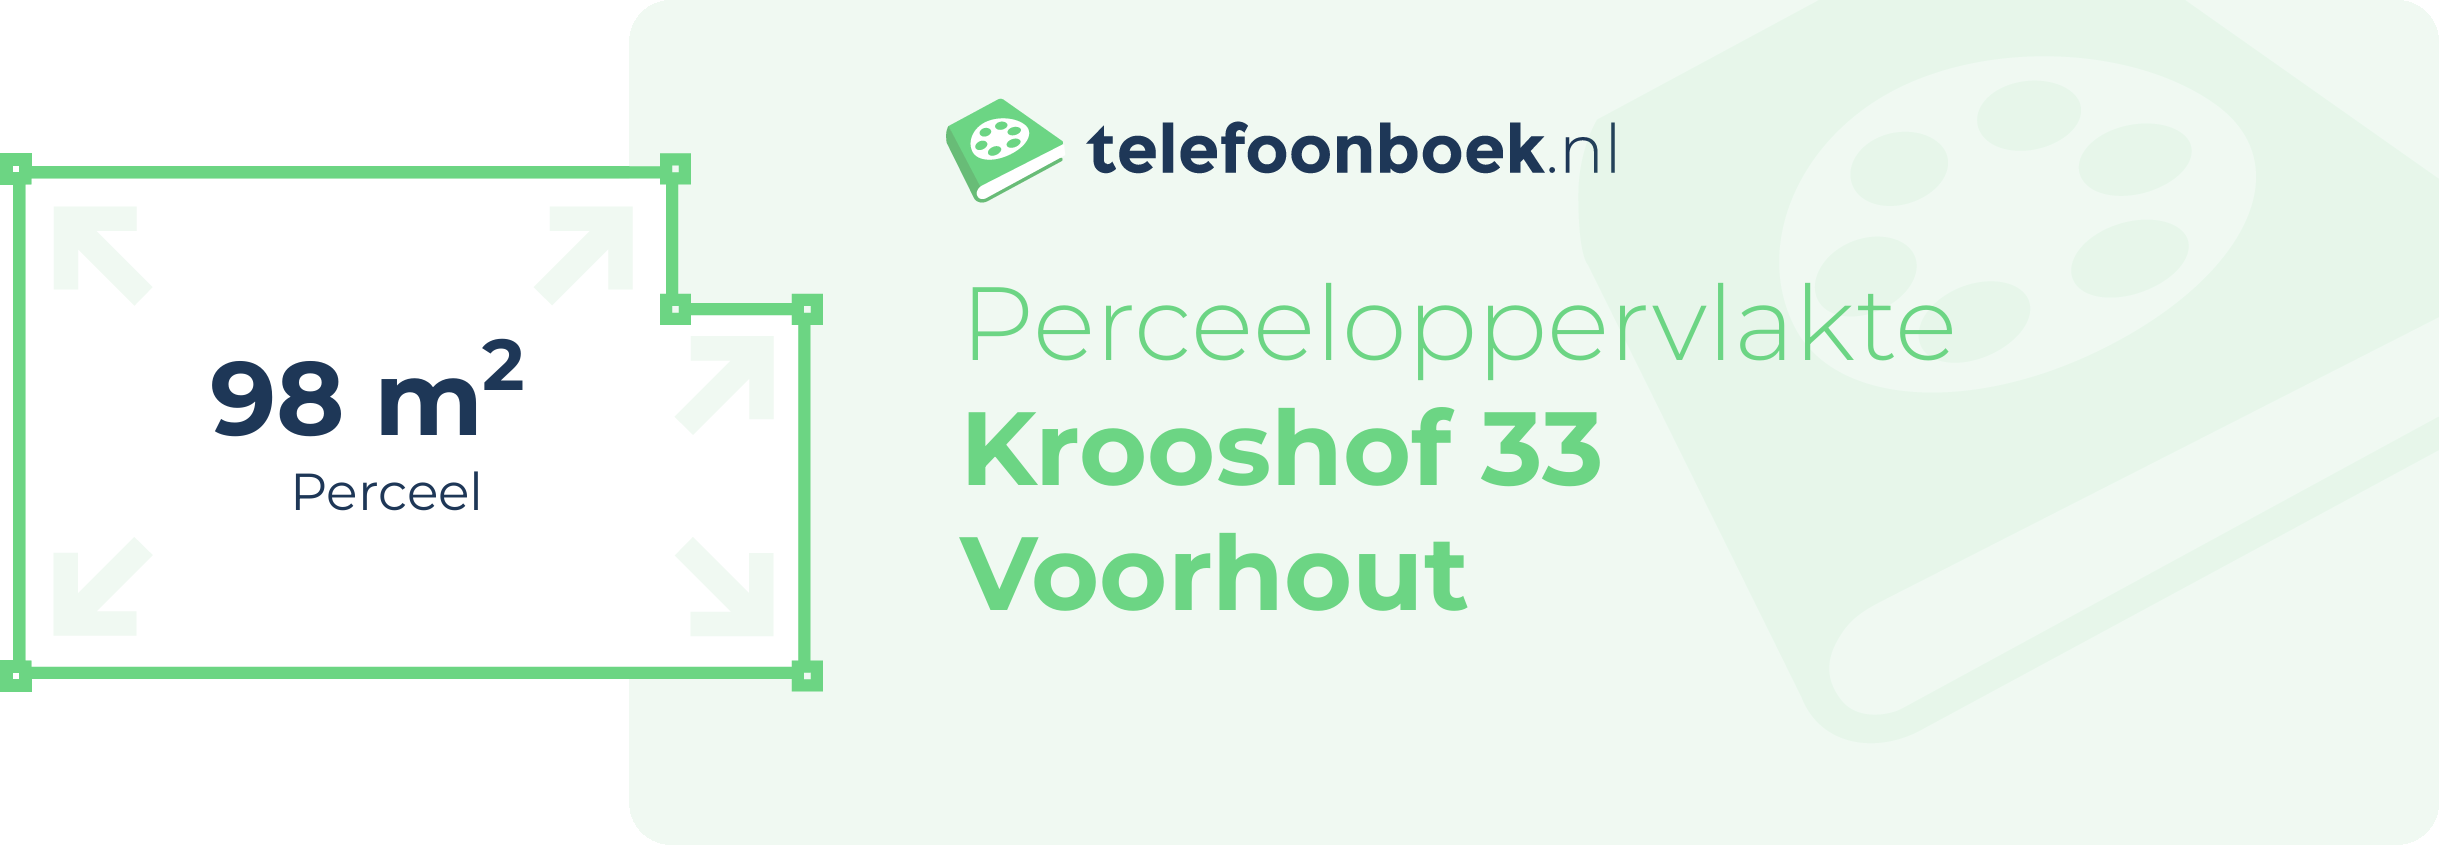 Perceeloppervlakte Krooshof 33 Voorhout